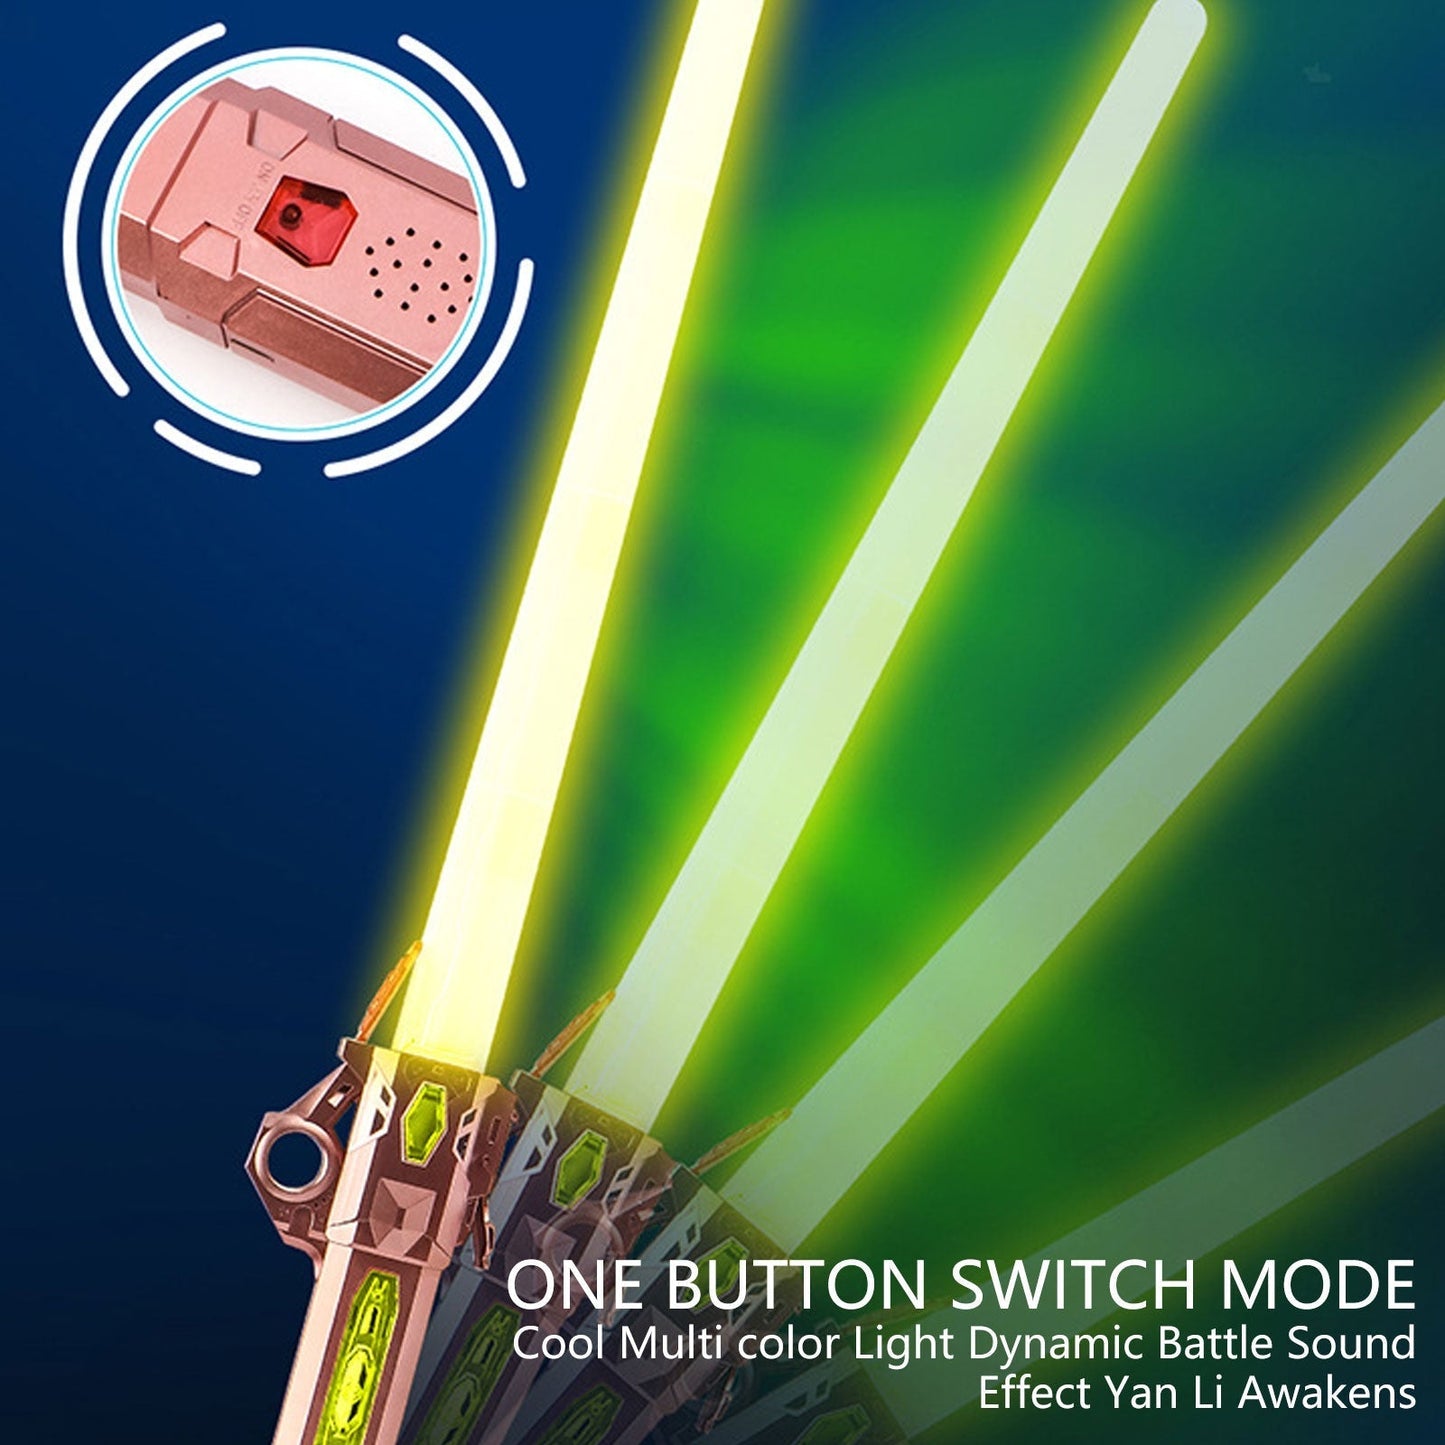 🪄 LuminEdge- 7 Color Galaxy Retractable Toy Laser Sword 🌌